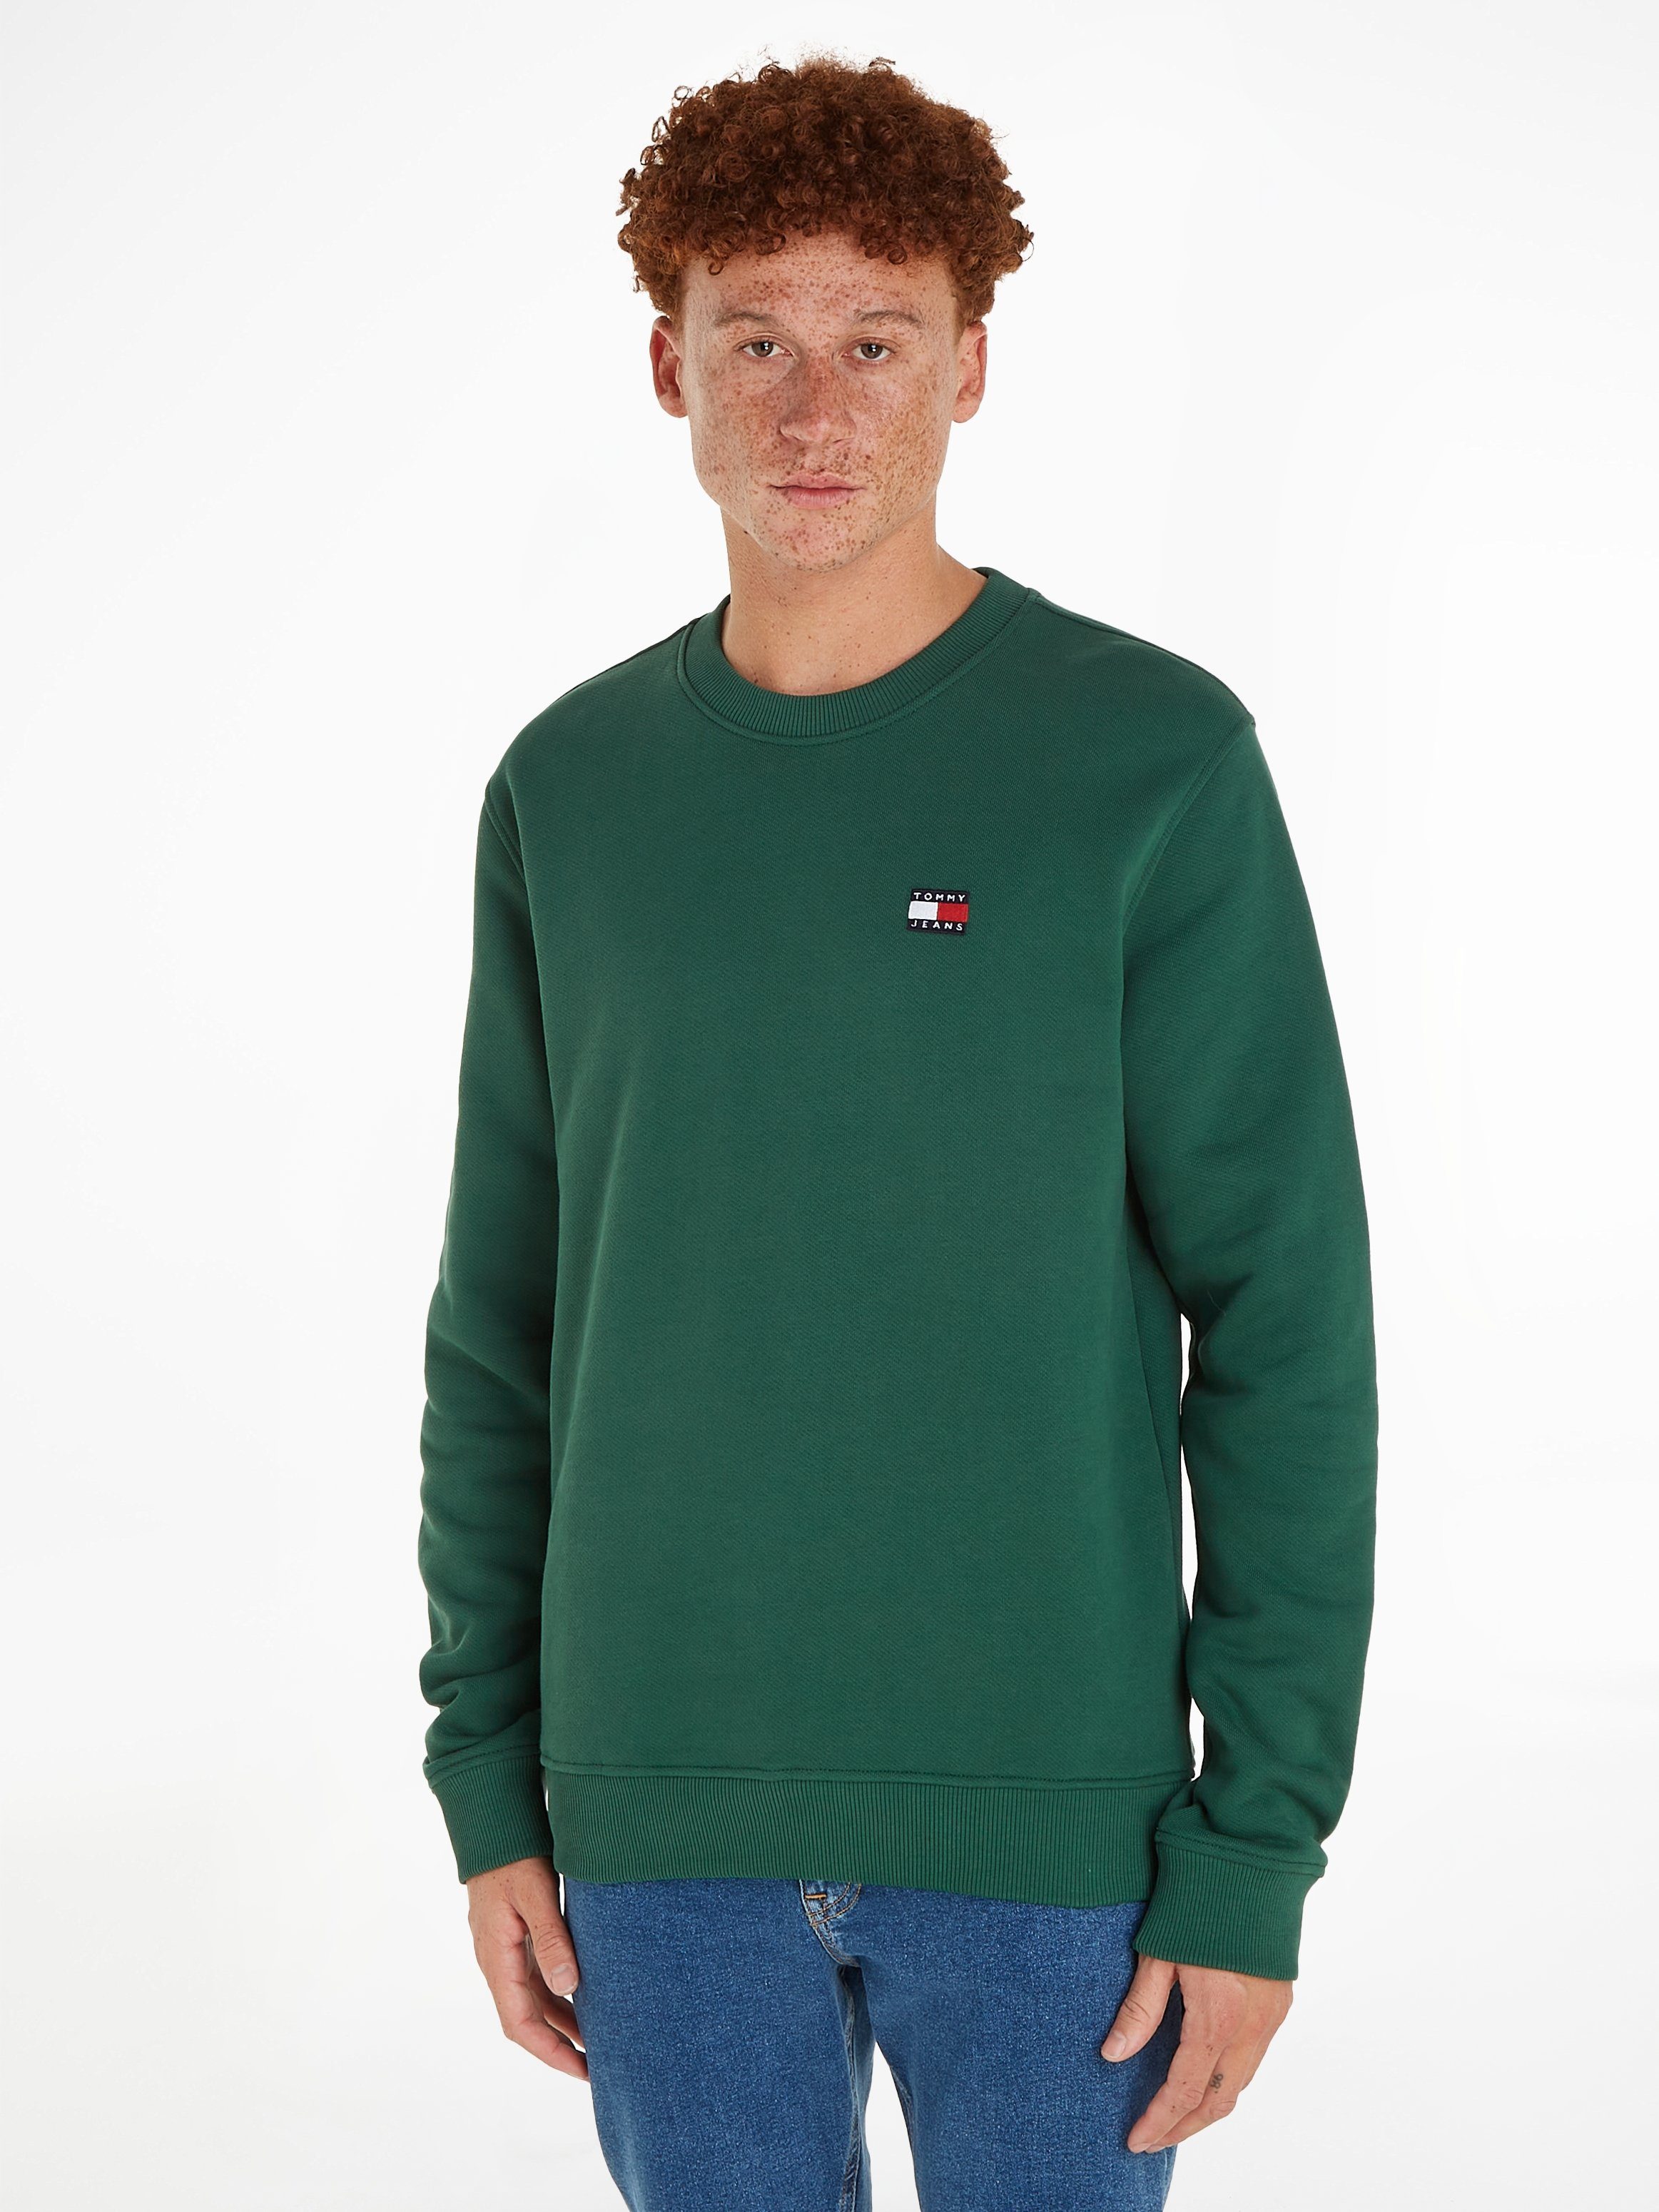 Hilfiger | Sweatshirts online OTTO kaufen Tommy Herren